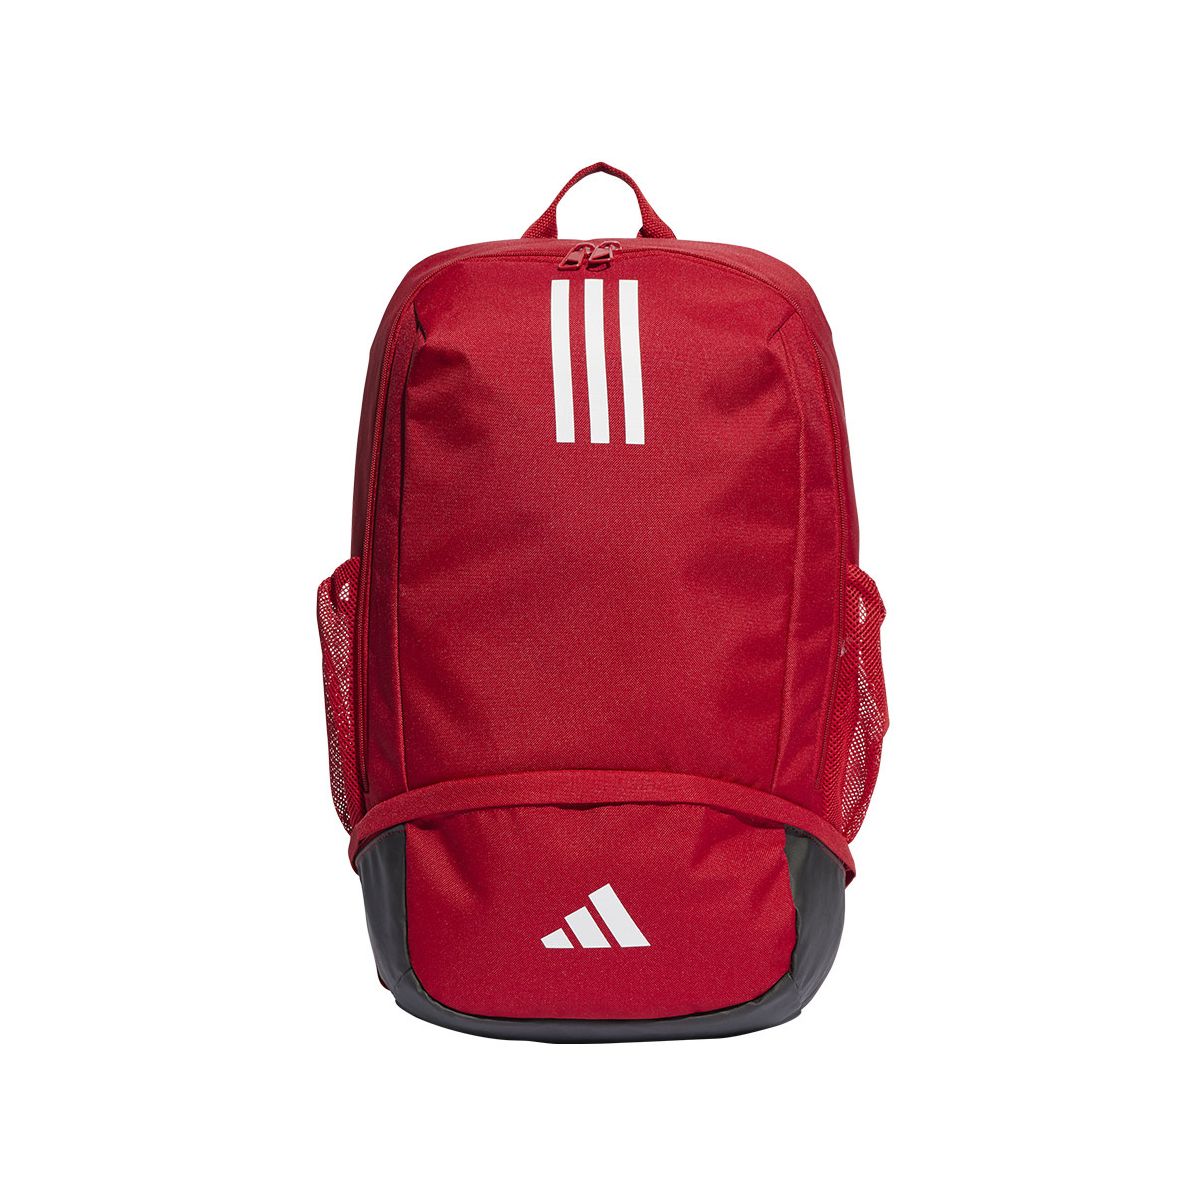 Plecak Adidas TIRO czerwony (IB8653)